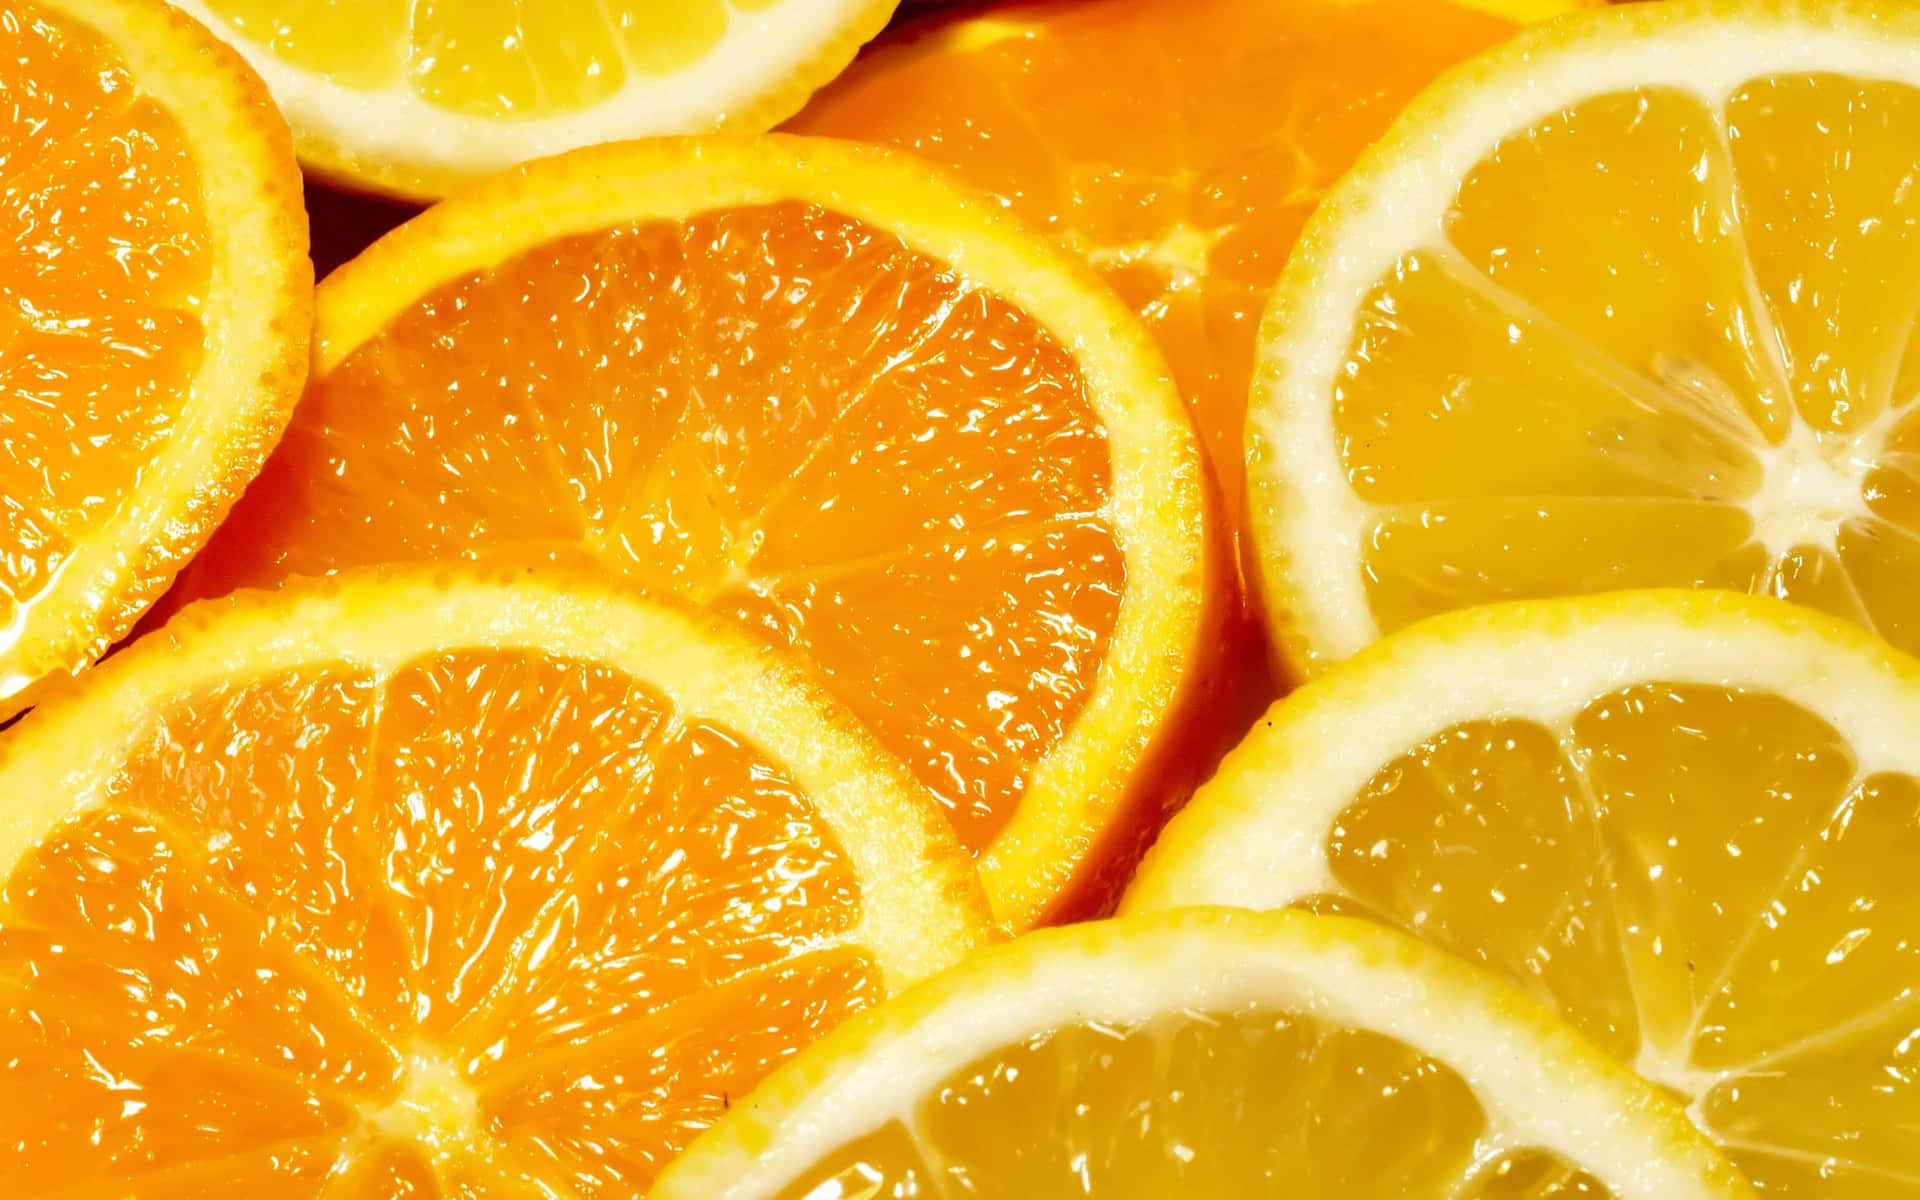 Fresh whole orange on a vibrant background